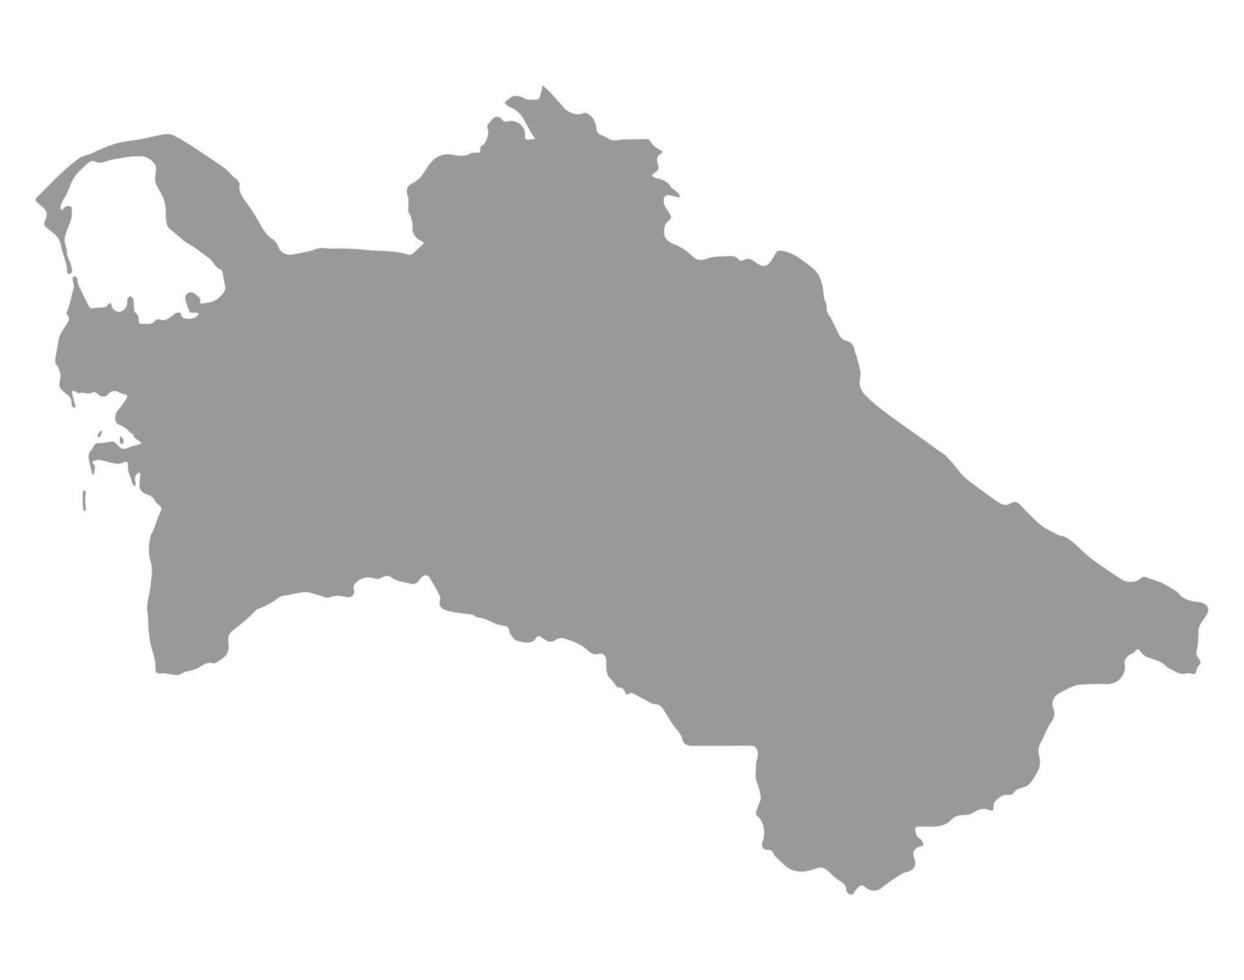 mappa del turkmenistan su png o sfondo trasparente.simbolo del tukmenistan.illustrazione vettoriale